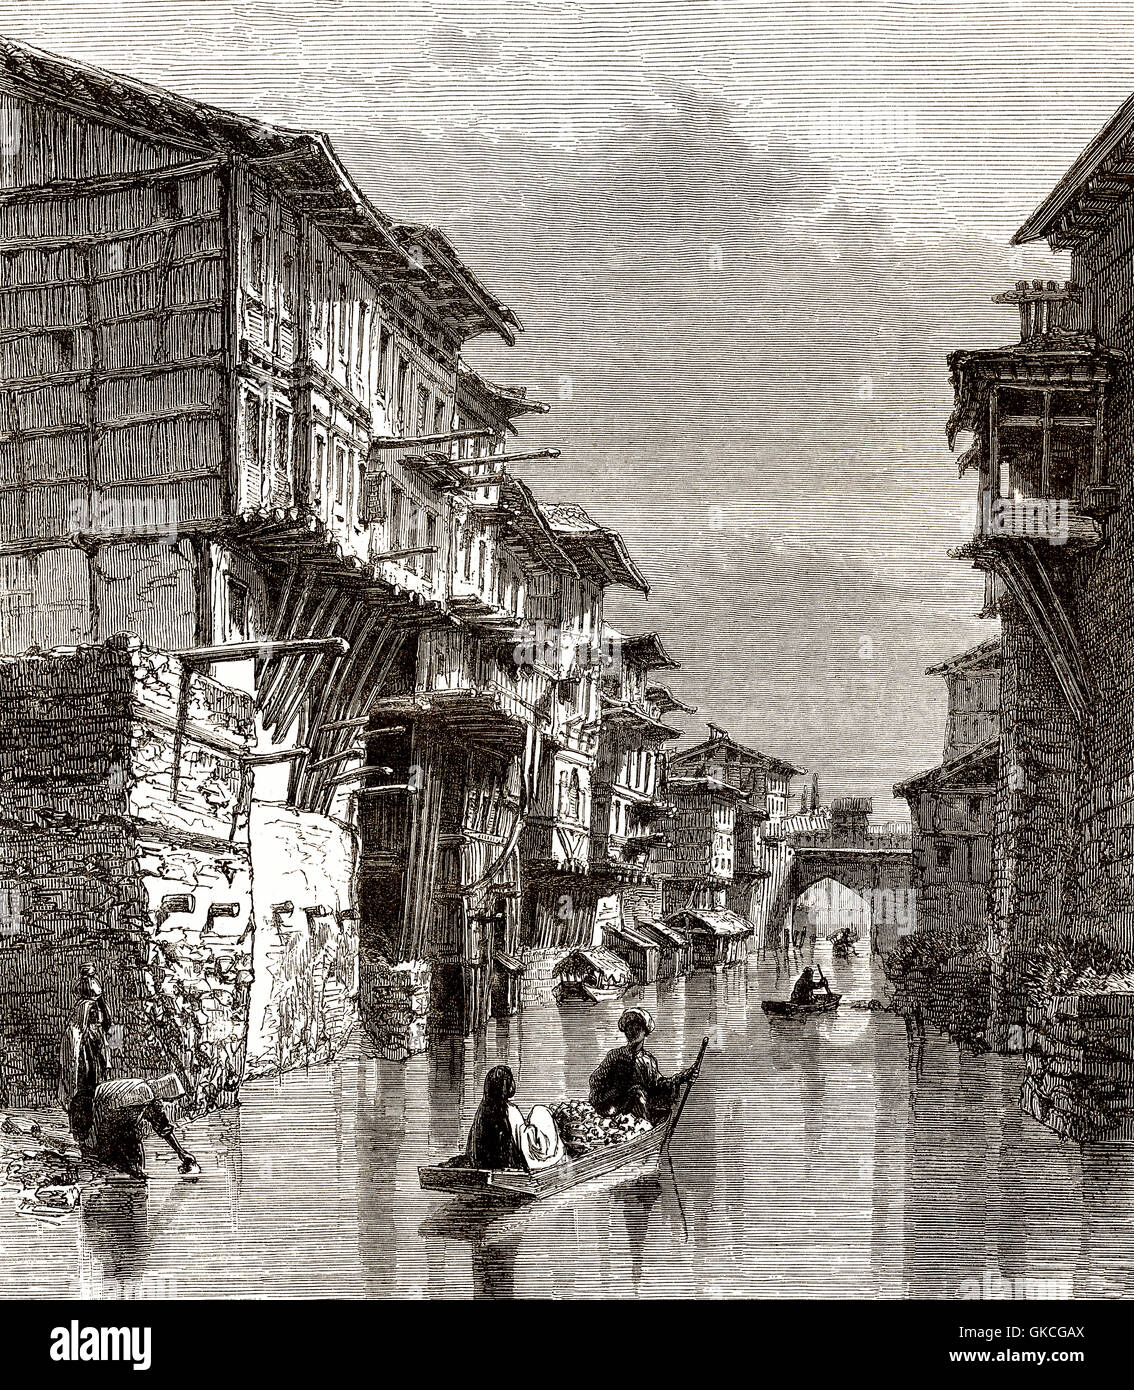 Nallah Mar Mar Mar, Canal, Kol, un canal de navigation à travers la vieille ville de Srinagar, Jammu-et-Cachemire, l'Inde, 19e Banque D'Images